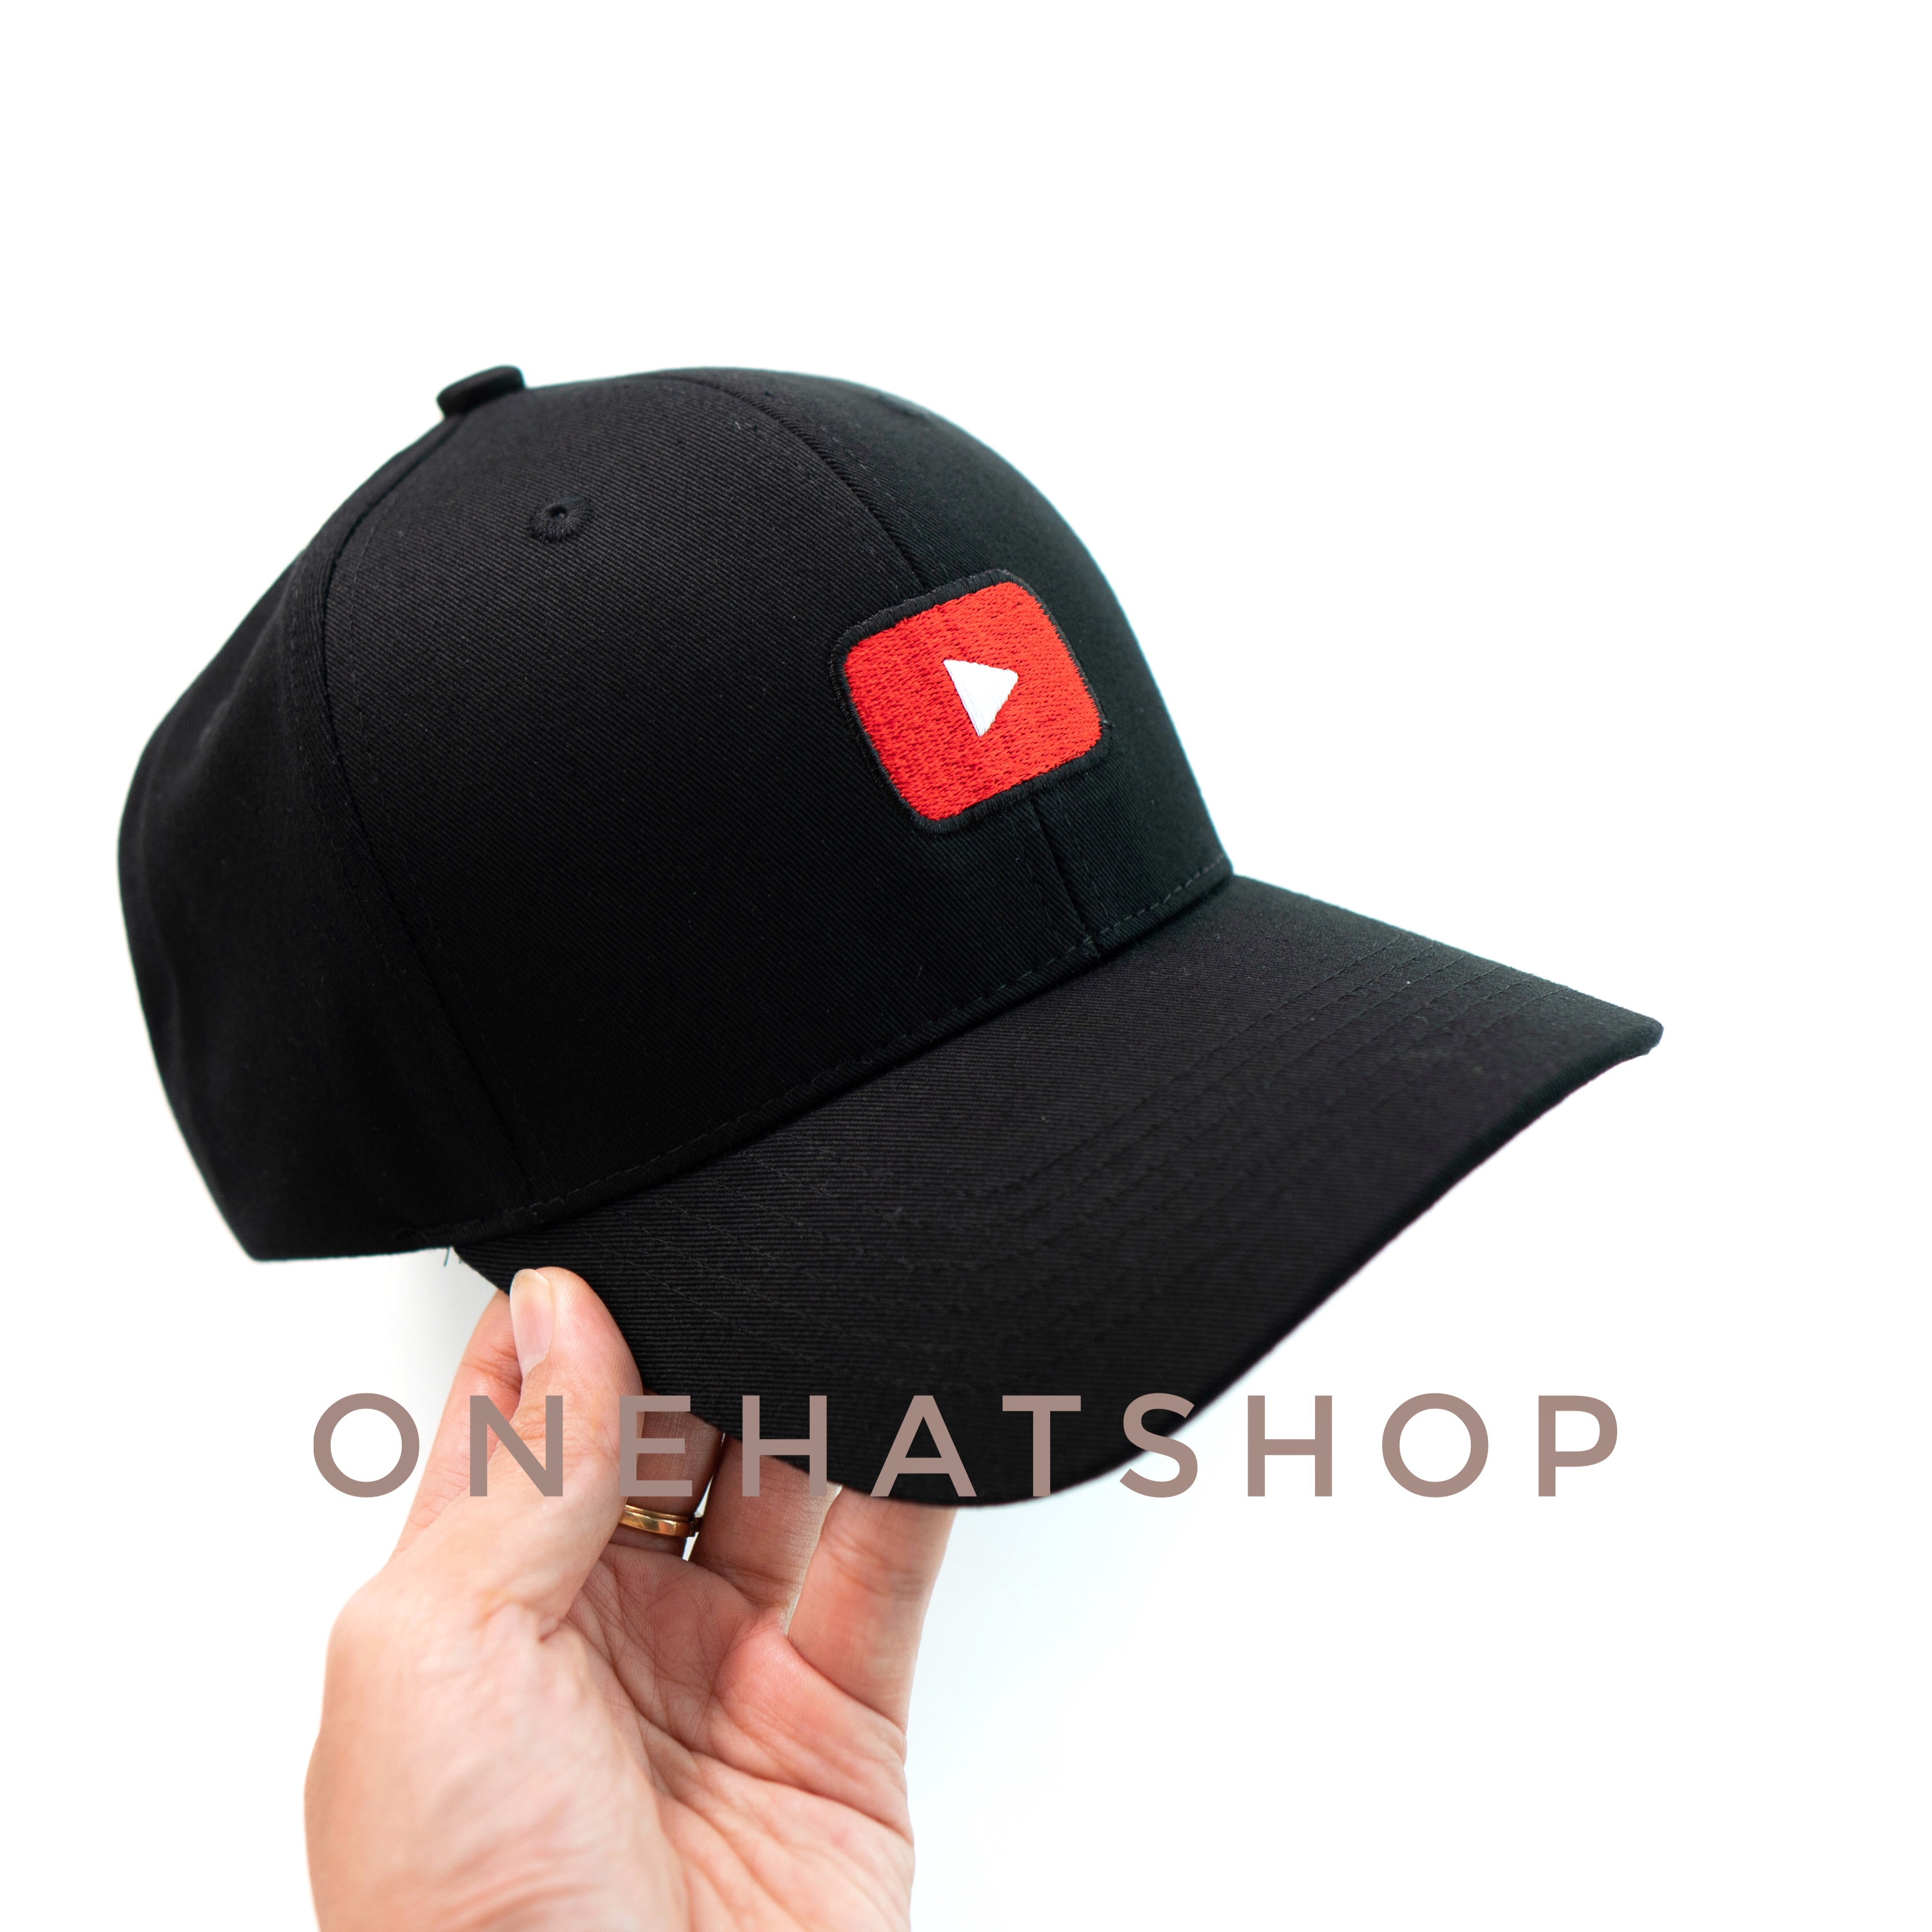 Nón lưỡi trai logo nút Play Youtube 2 dòng fom Trucker và Baseball cap Brand One Hat